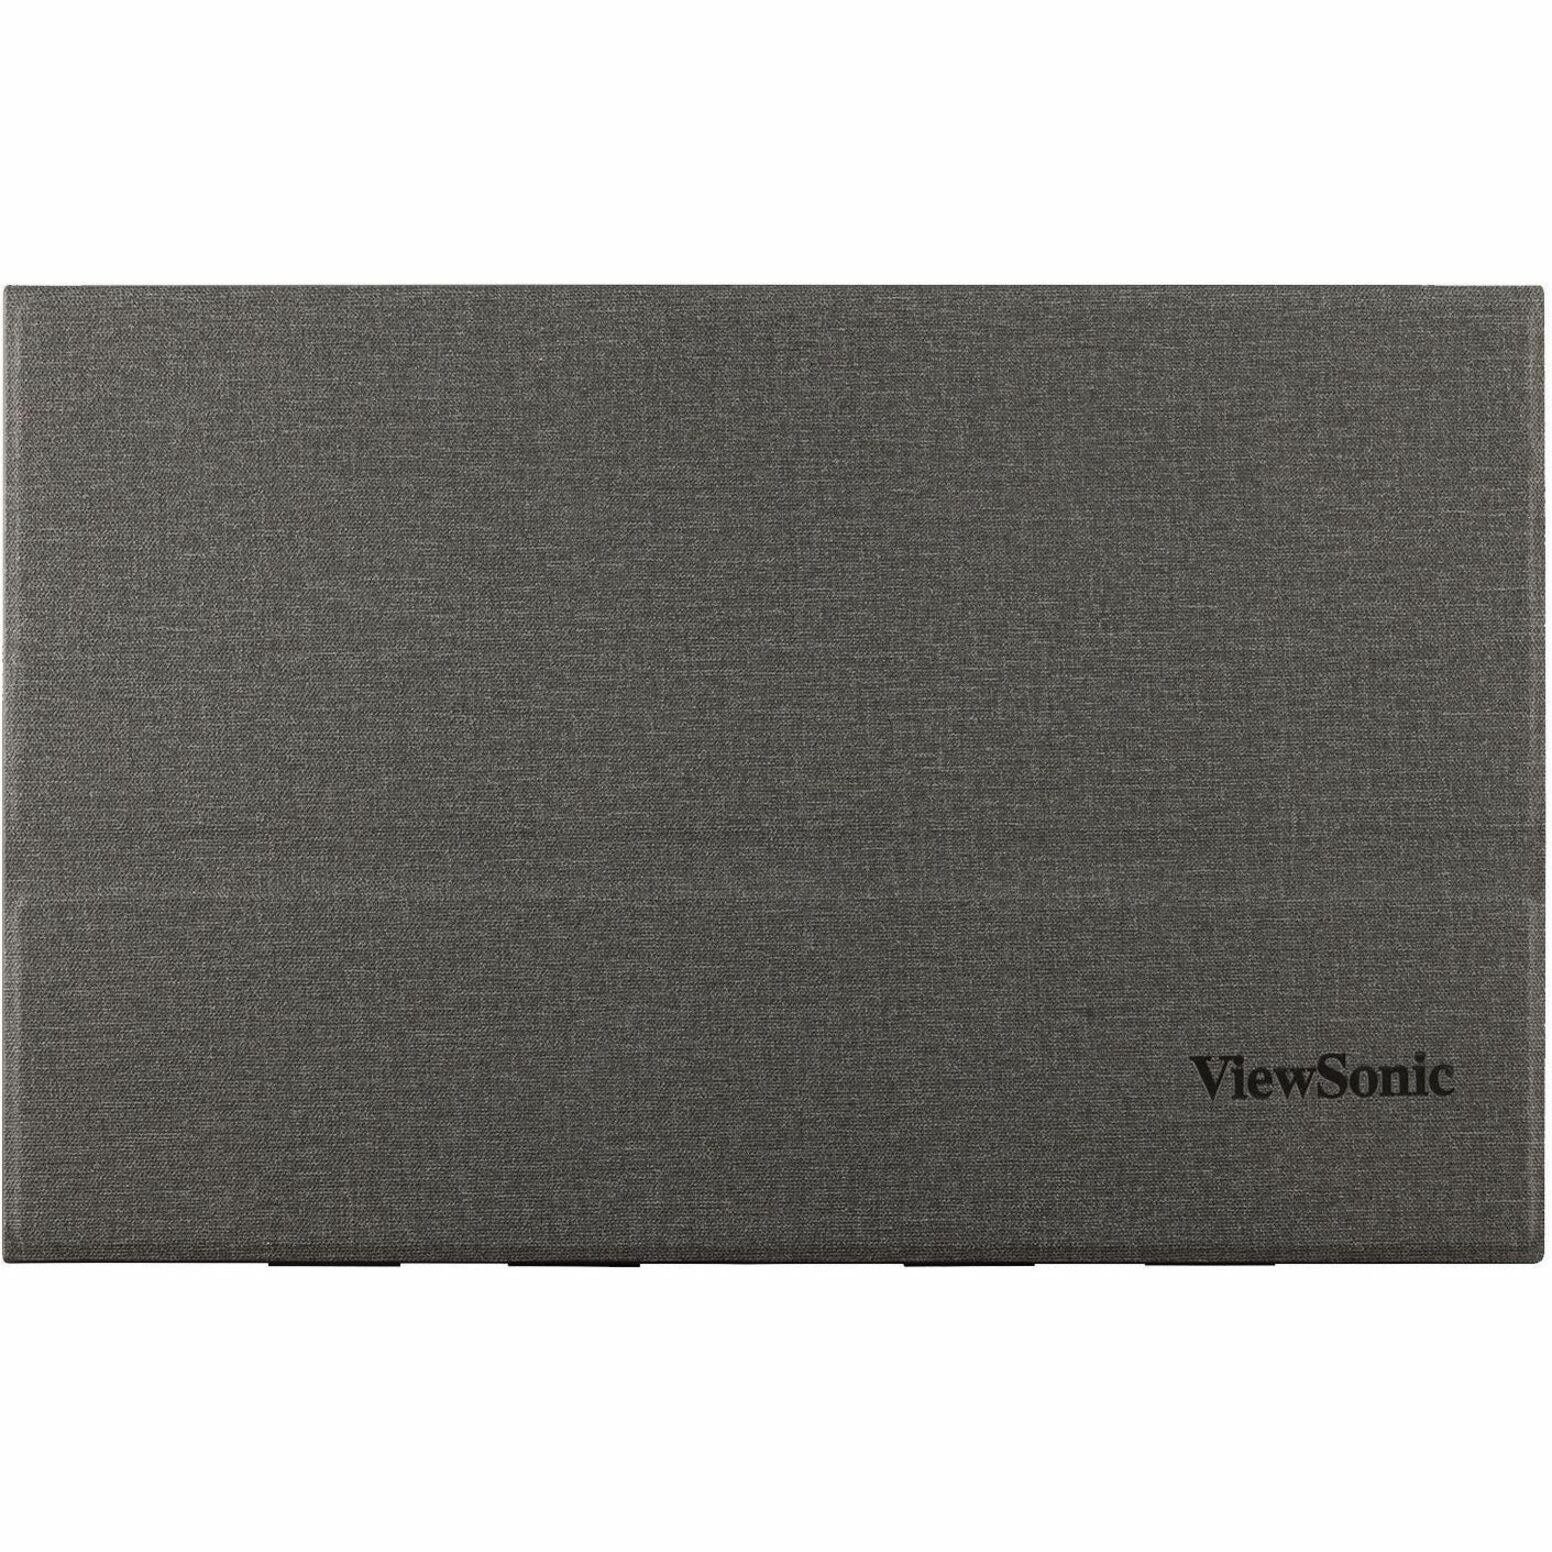 ViewSonic VX1655-4KゲーミングLEDモニター、15.6インチ4K UHDポータブルモニター、60W USB CとミニHDMI